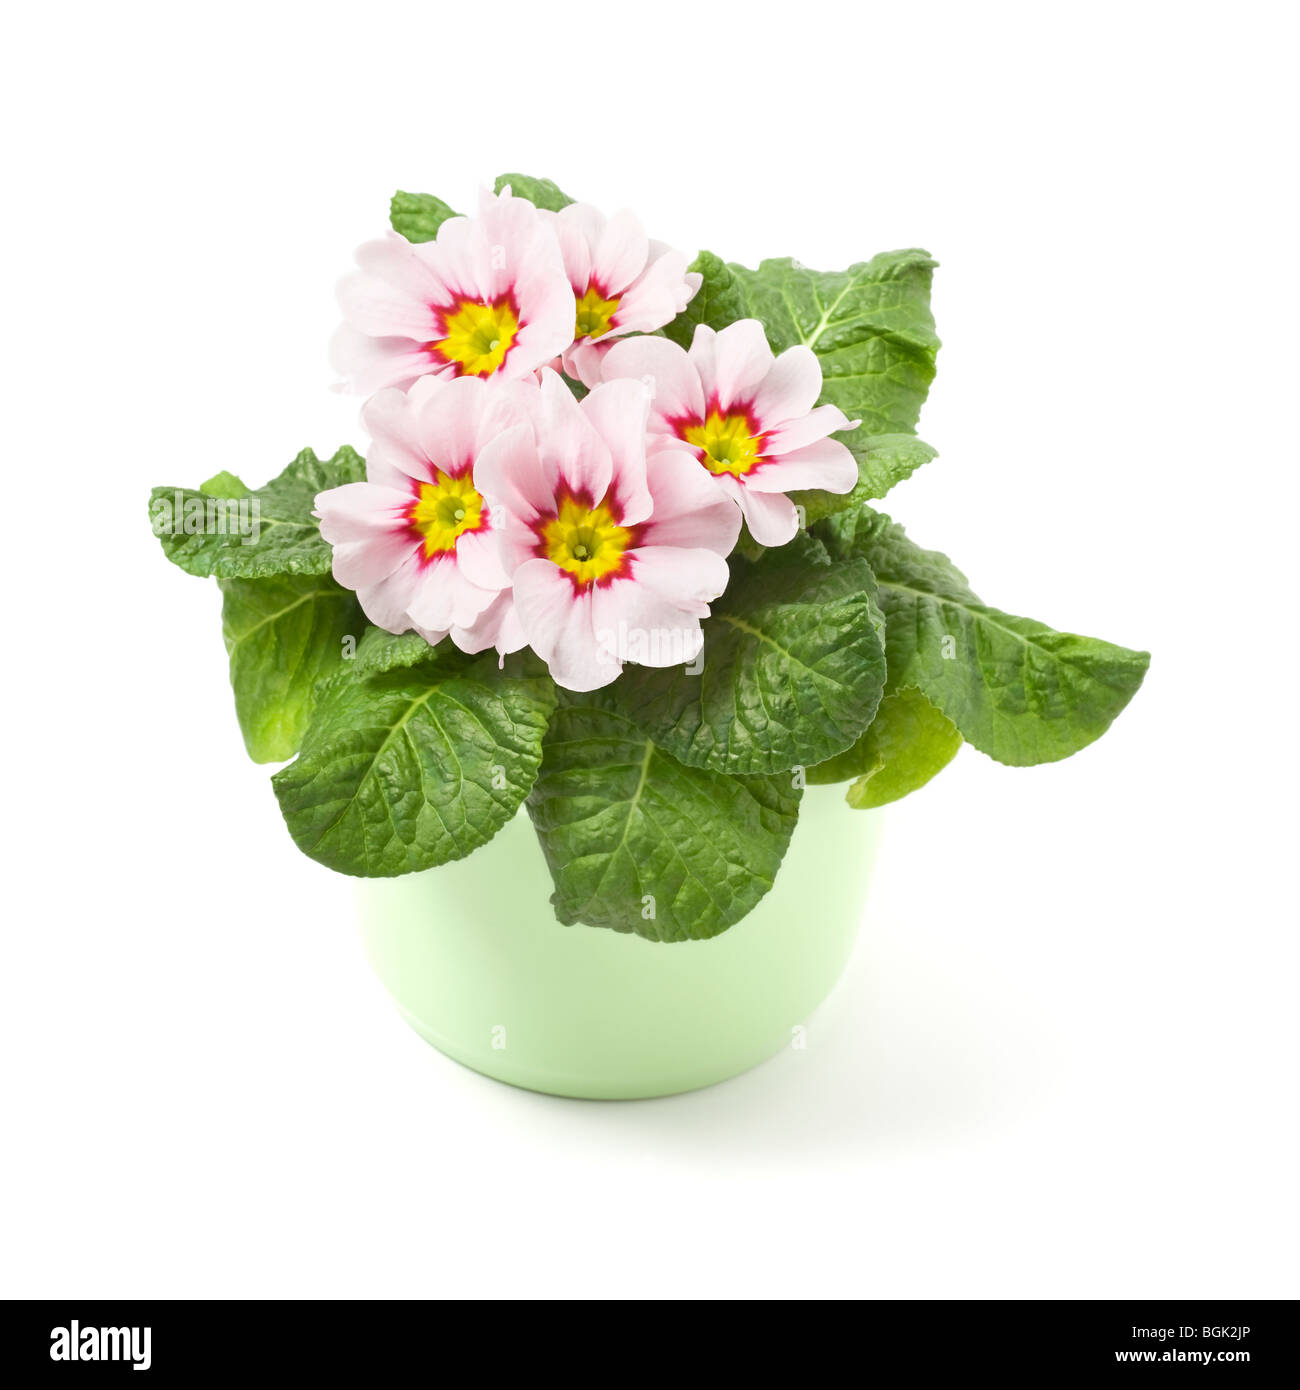 Rosy primrose in ceramic pot Stock Photo